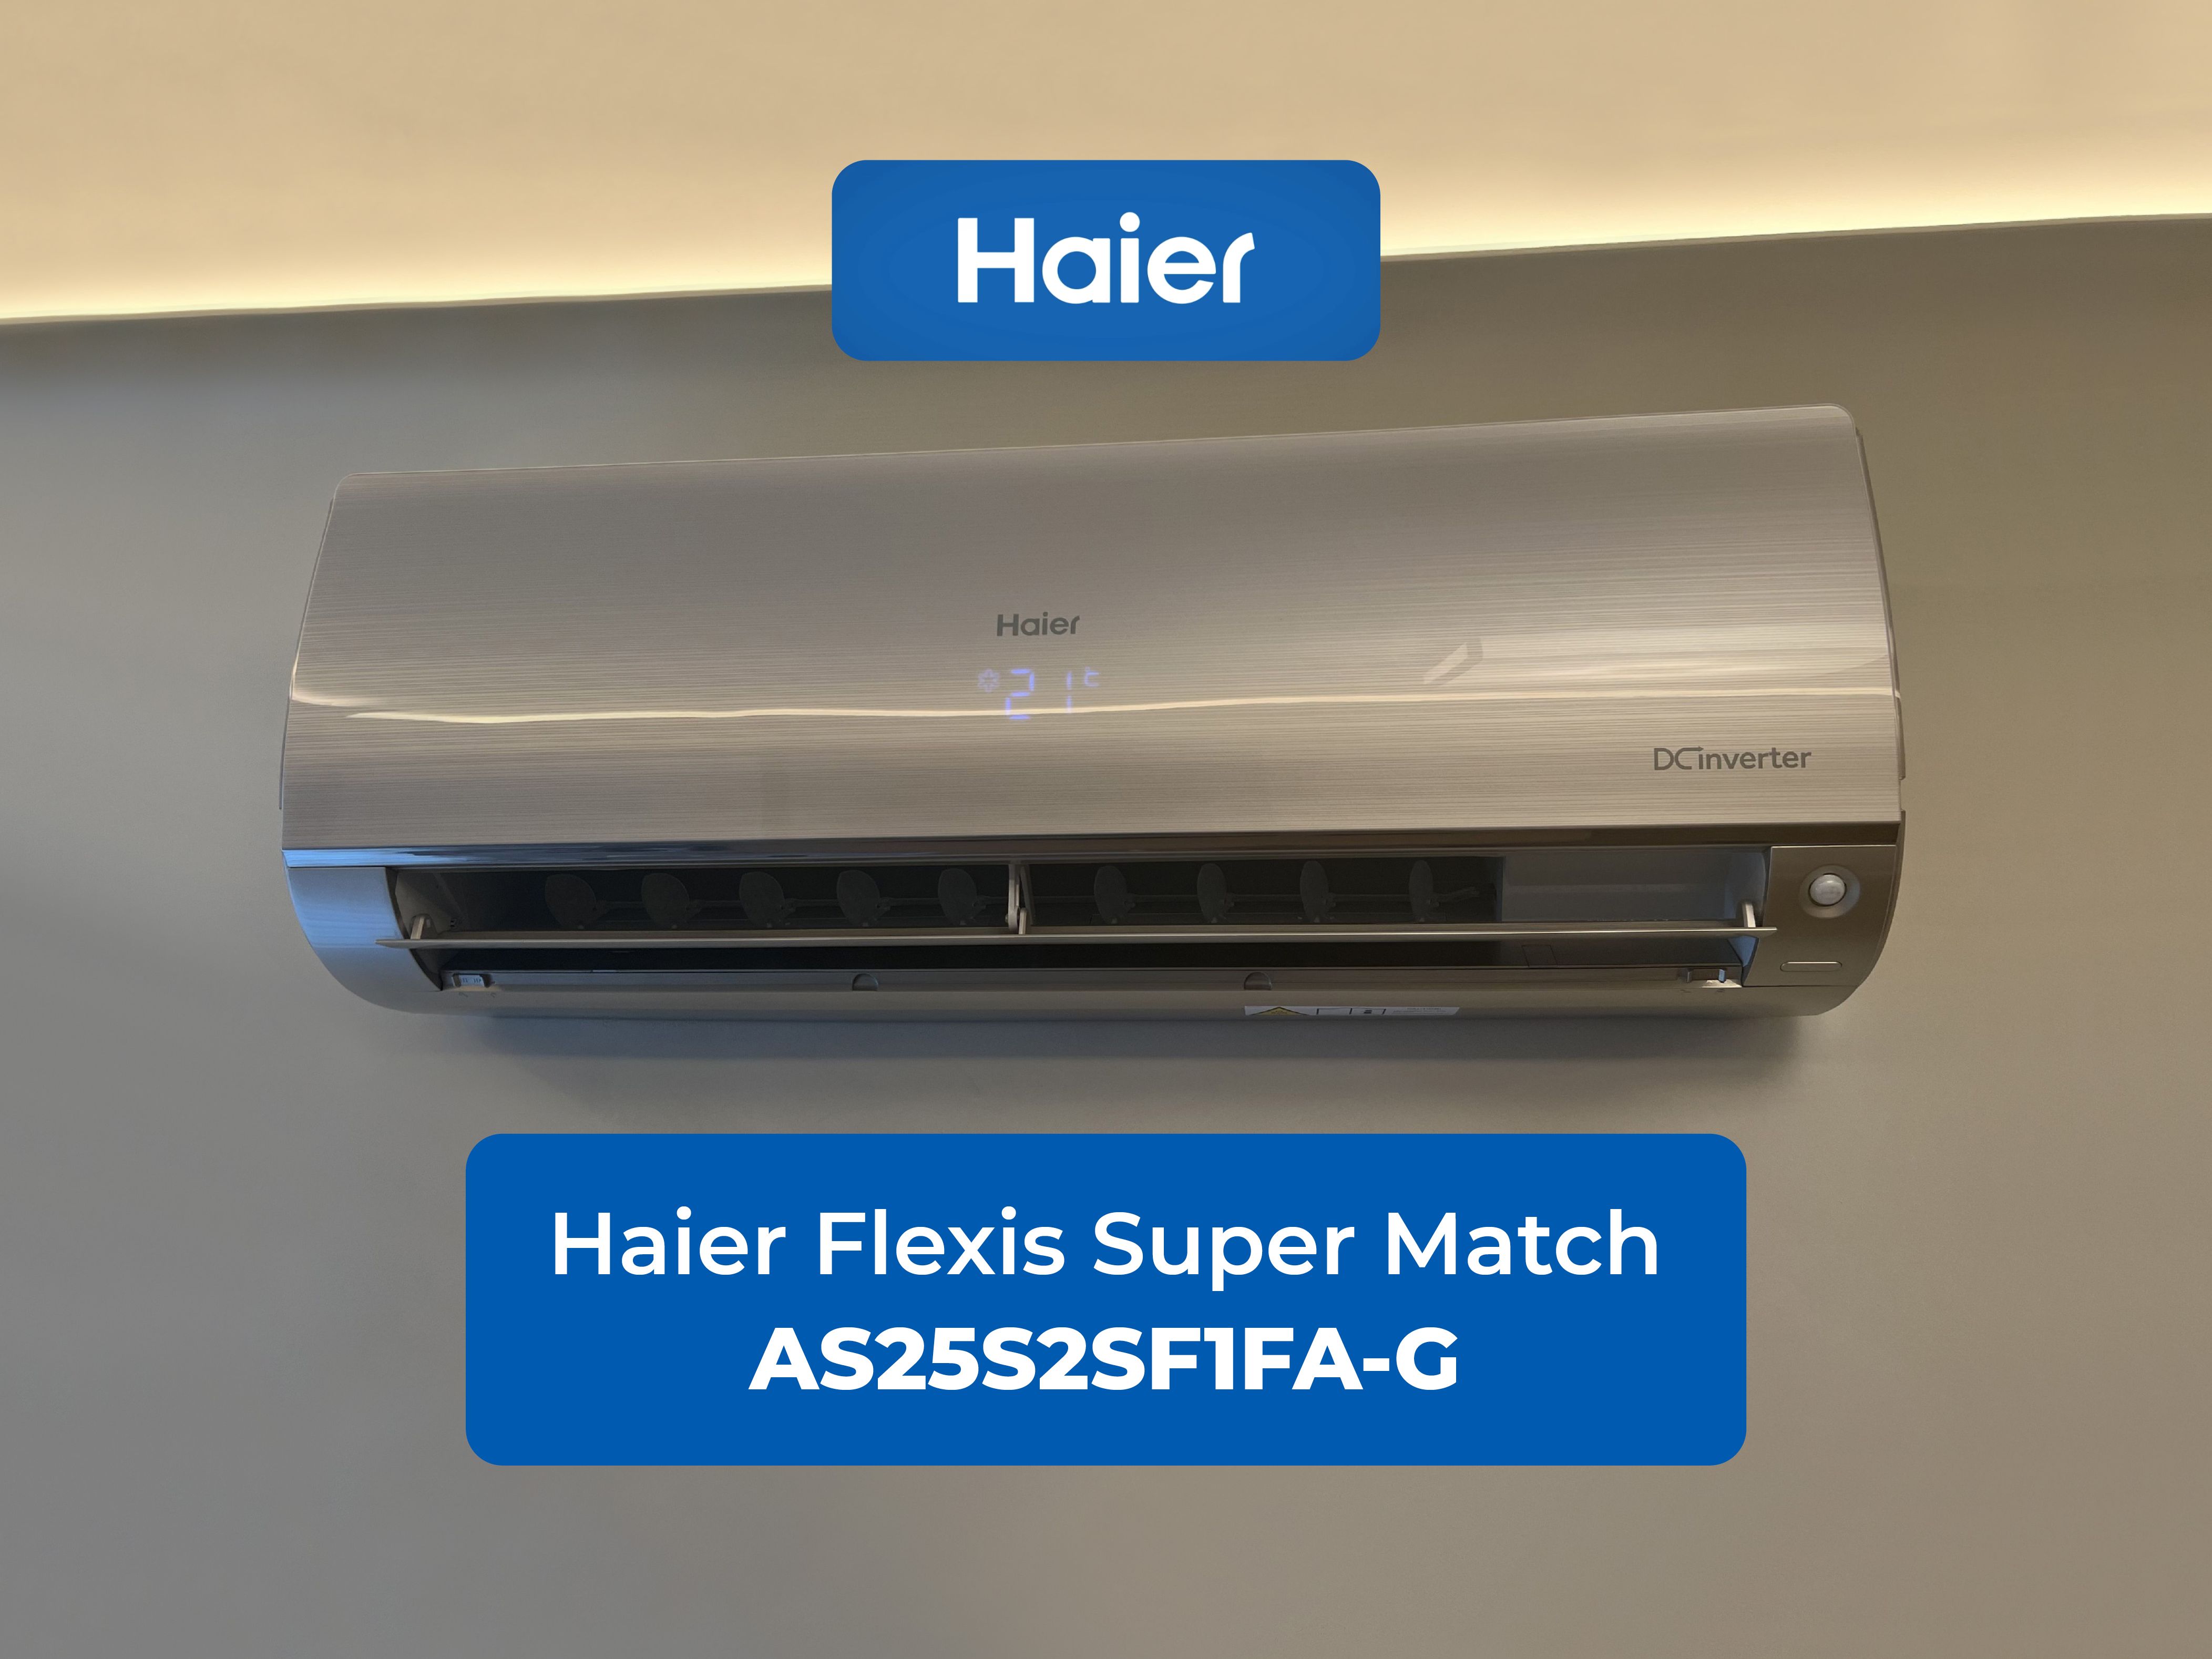 Подключаем кондиционер Haier Flexis Super Match AS25S2SF1FA-G в умный дом WirenBoard через шлюз ONOKOM HR-1-MB-B.